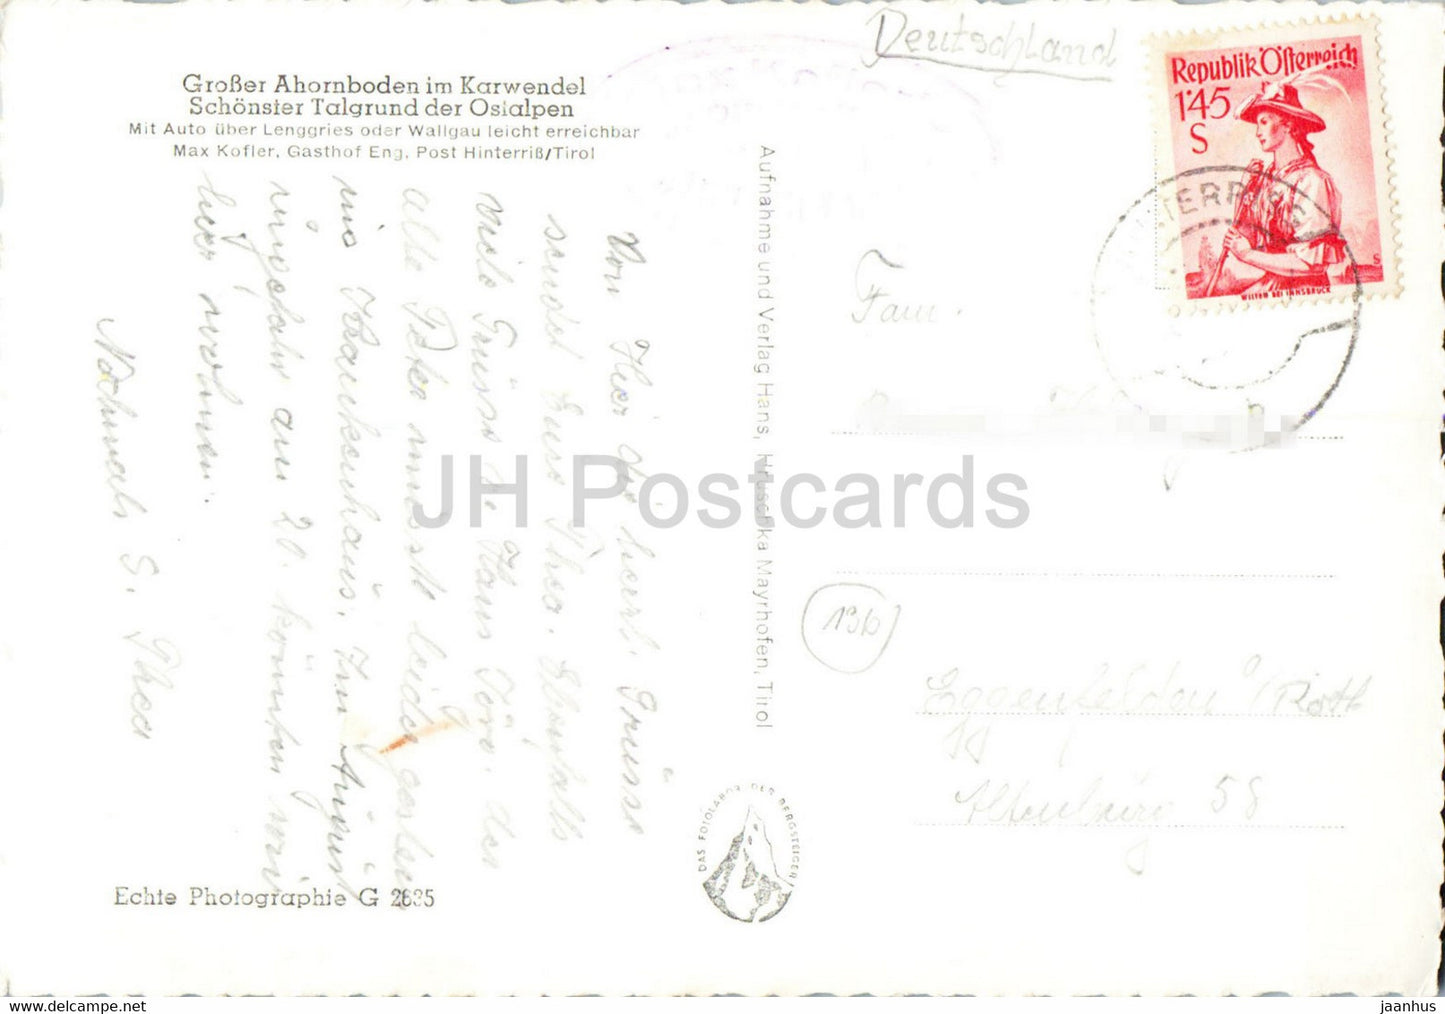 Grosser Ahornboden im Karwendel - car - old postcard - Austria - used